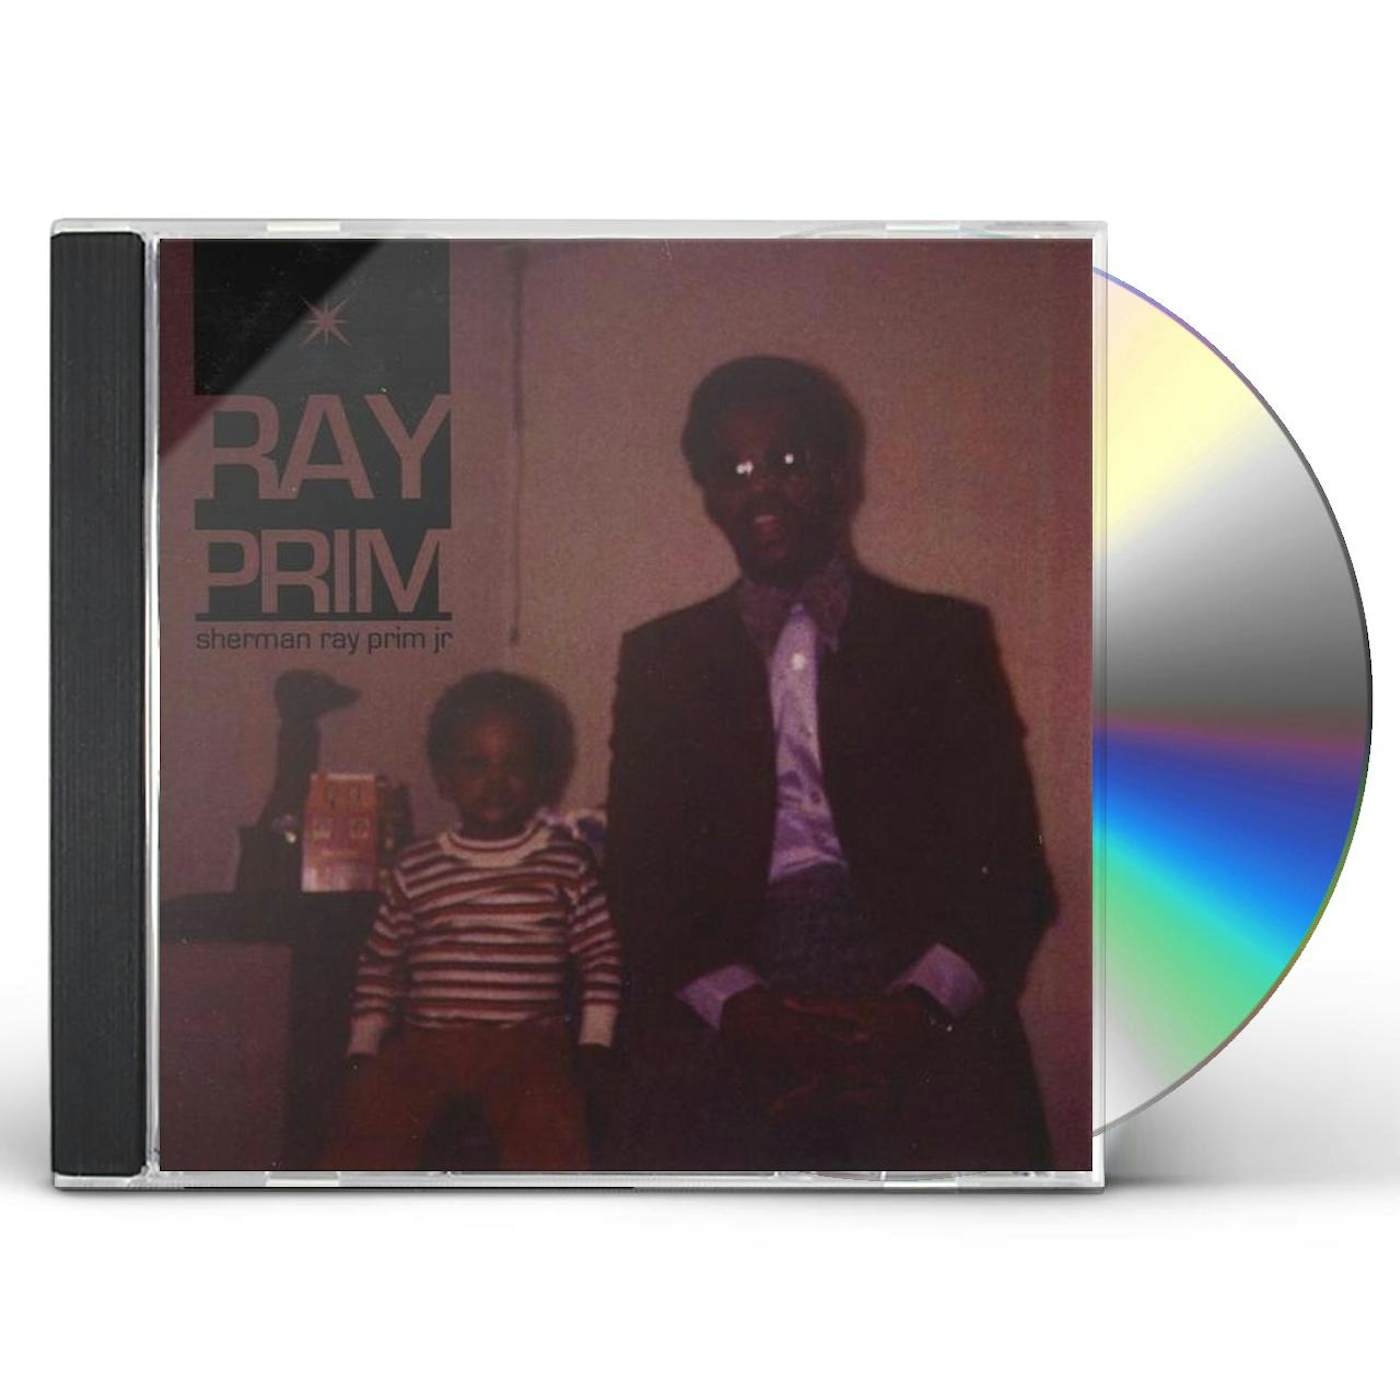 SHERMAN RAY PRIM JR CD